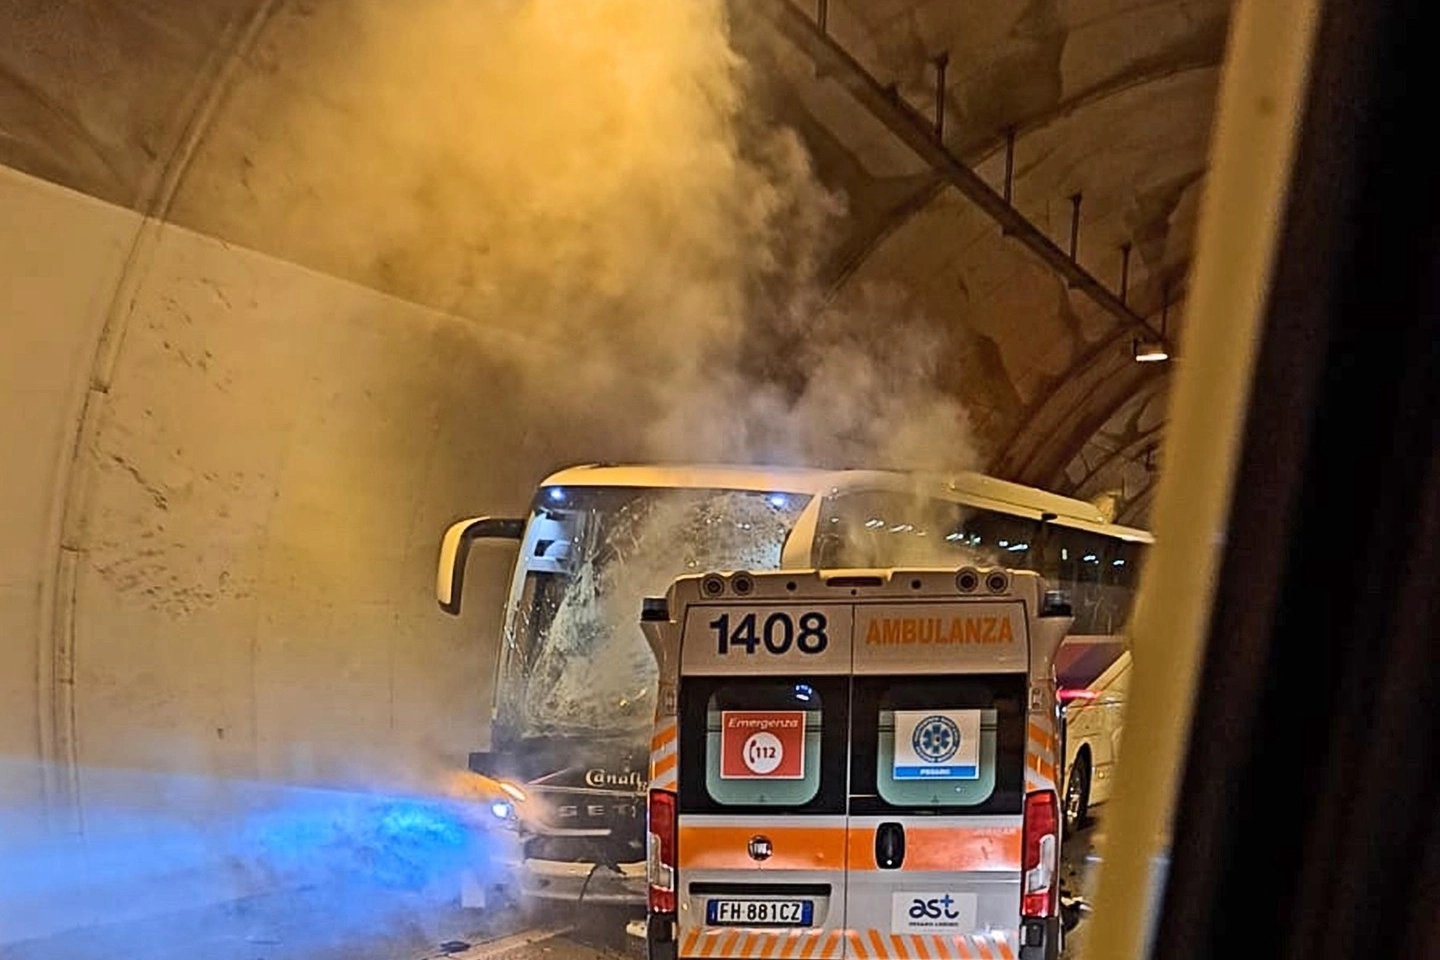 Incidente tra ambulanza e pullman a Urbino nella Galleria la Bretella